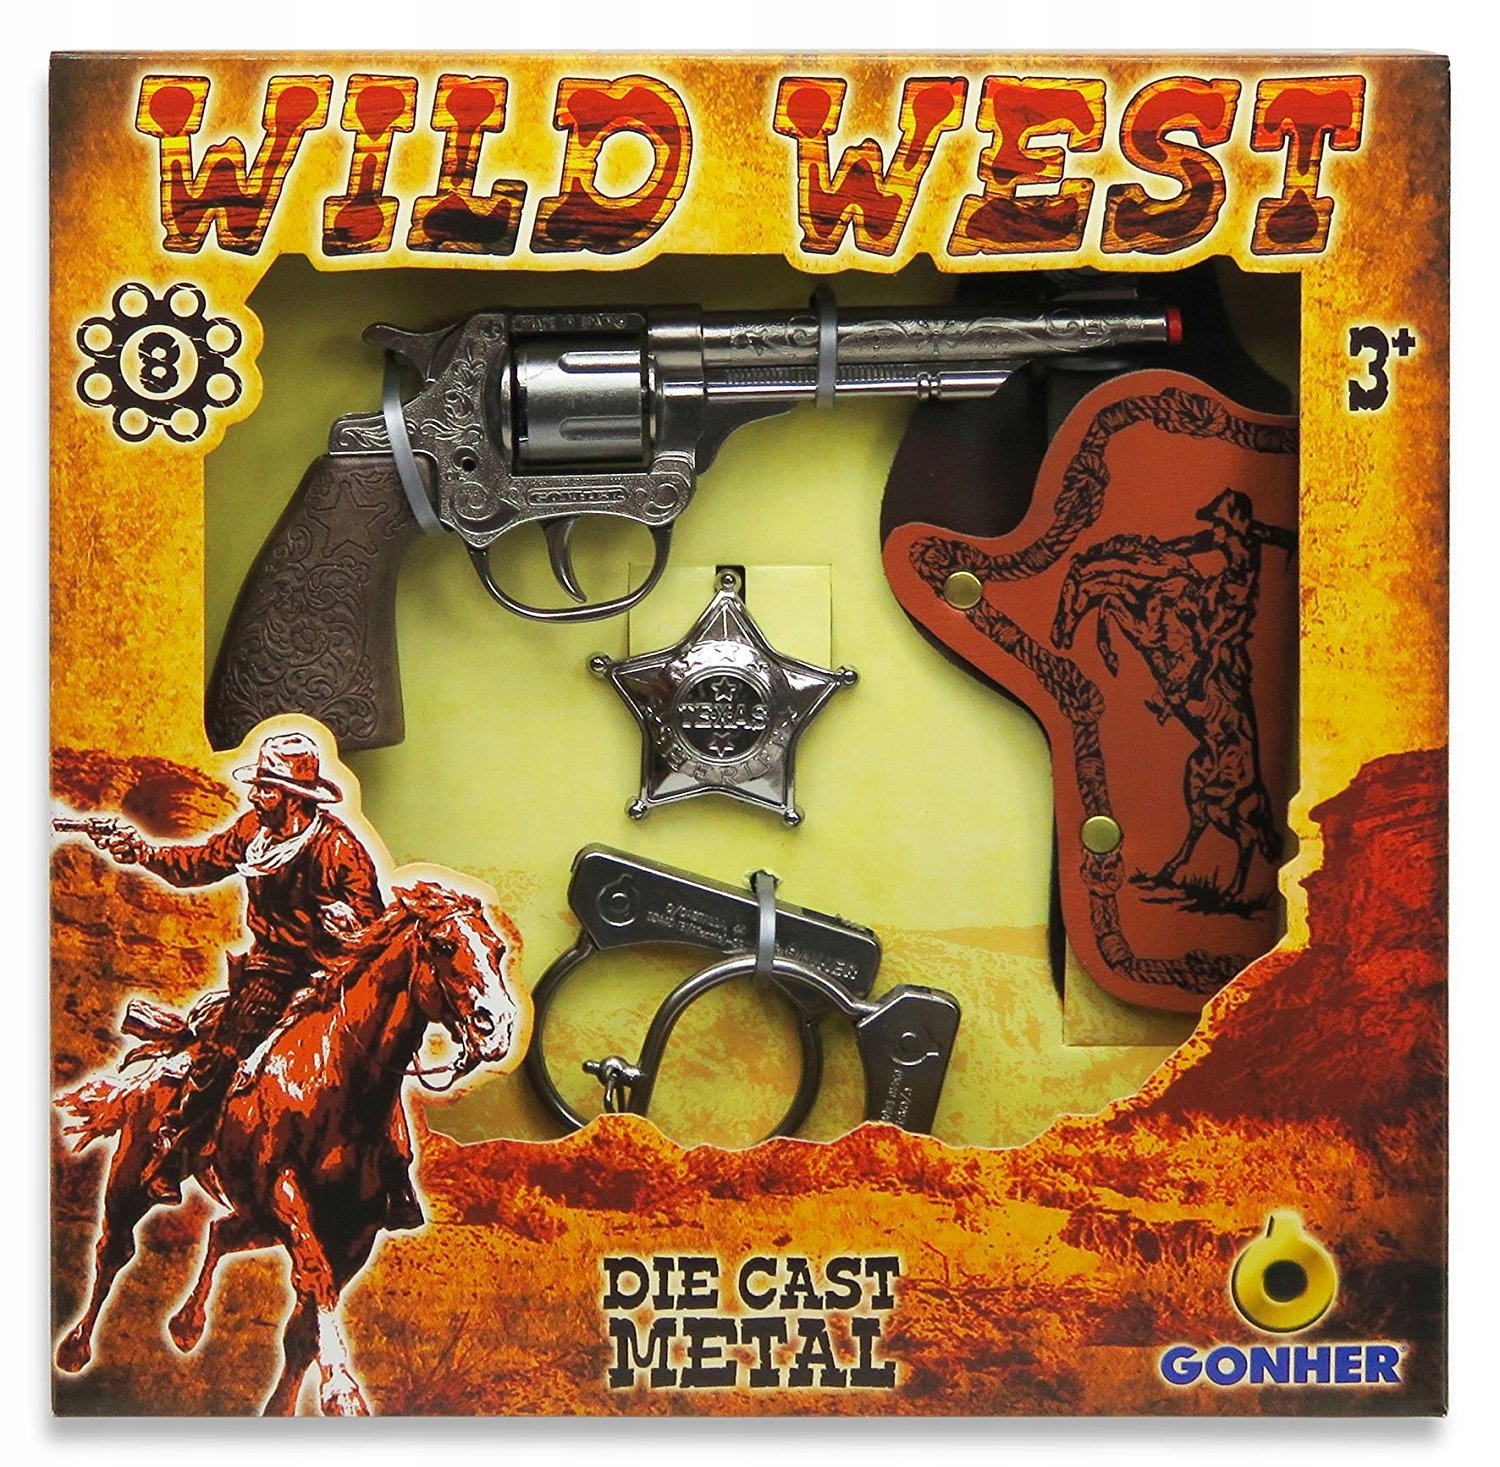 Набор ковбоя. Игрушка револьвер Gonher Cowboy (121/0), серебристый. Набор Гонхер ковбой. Револьвер на пистонах Gonher. Gonher оружие.